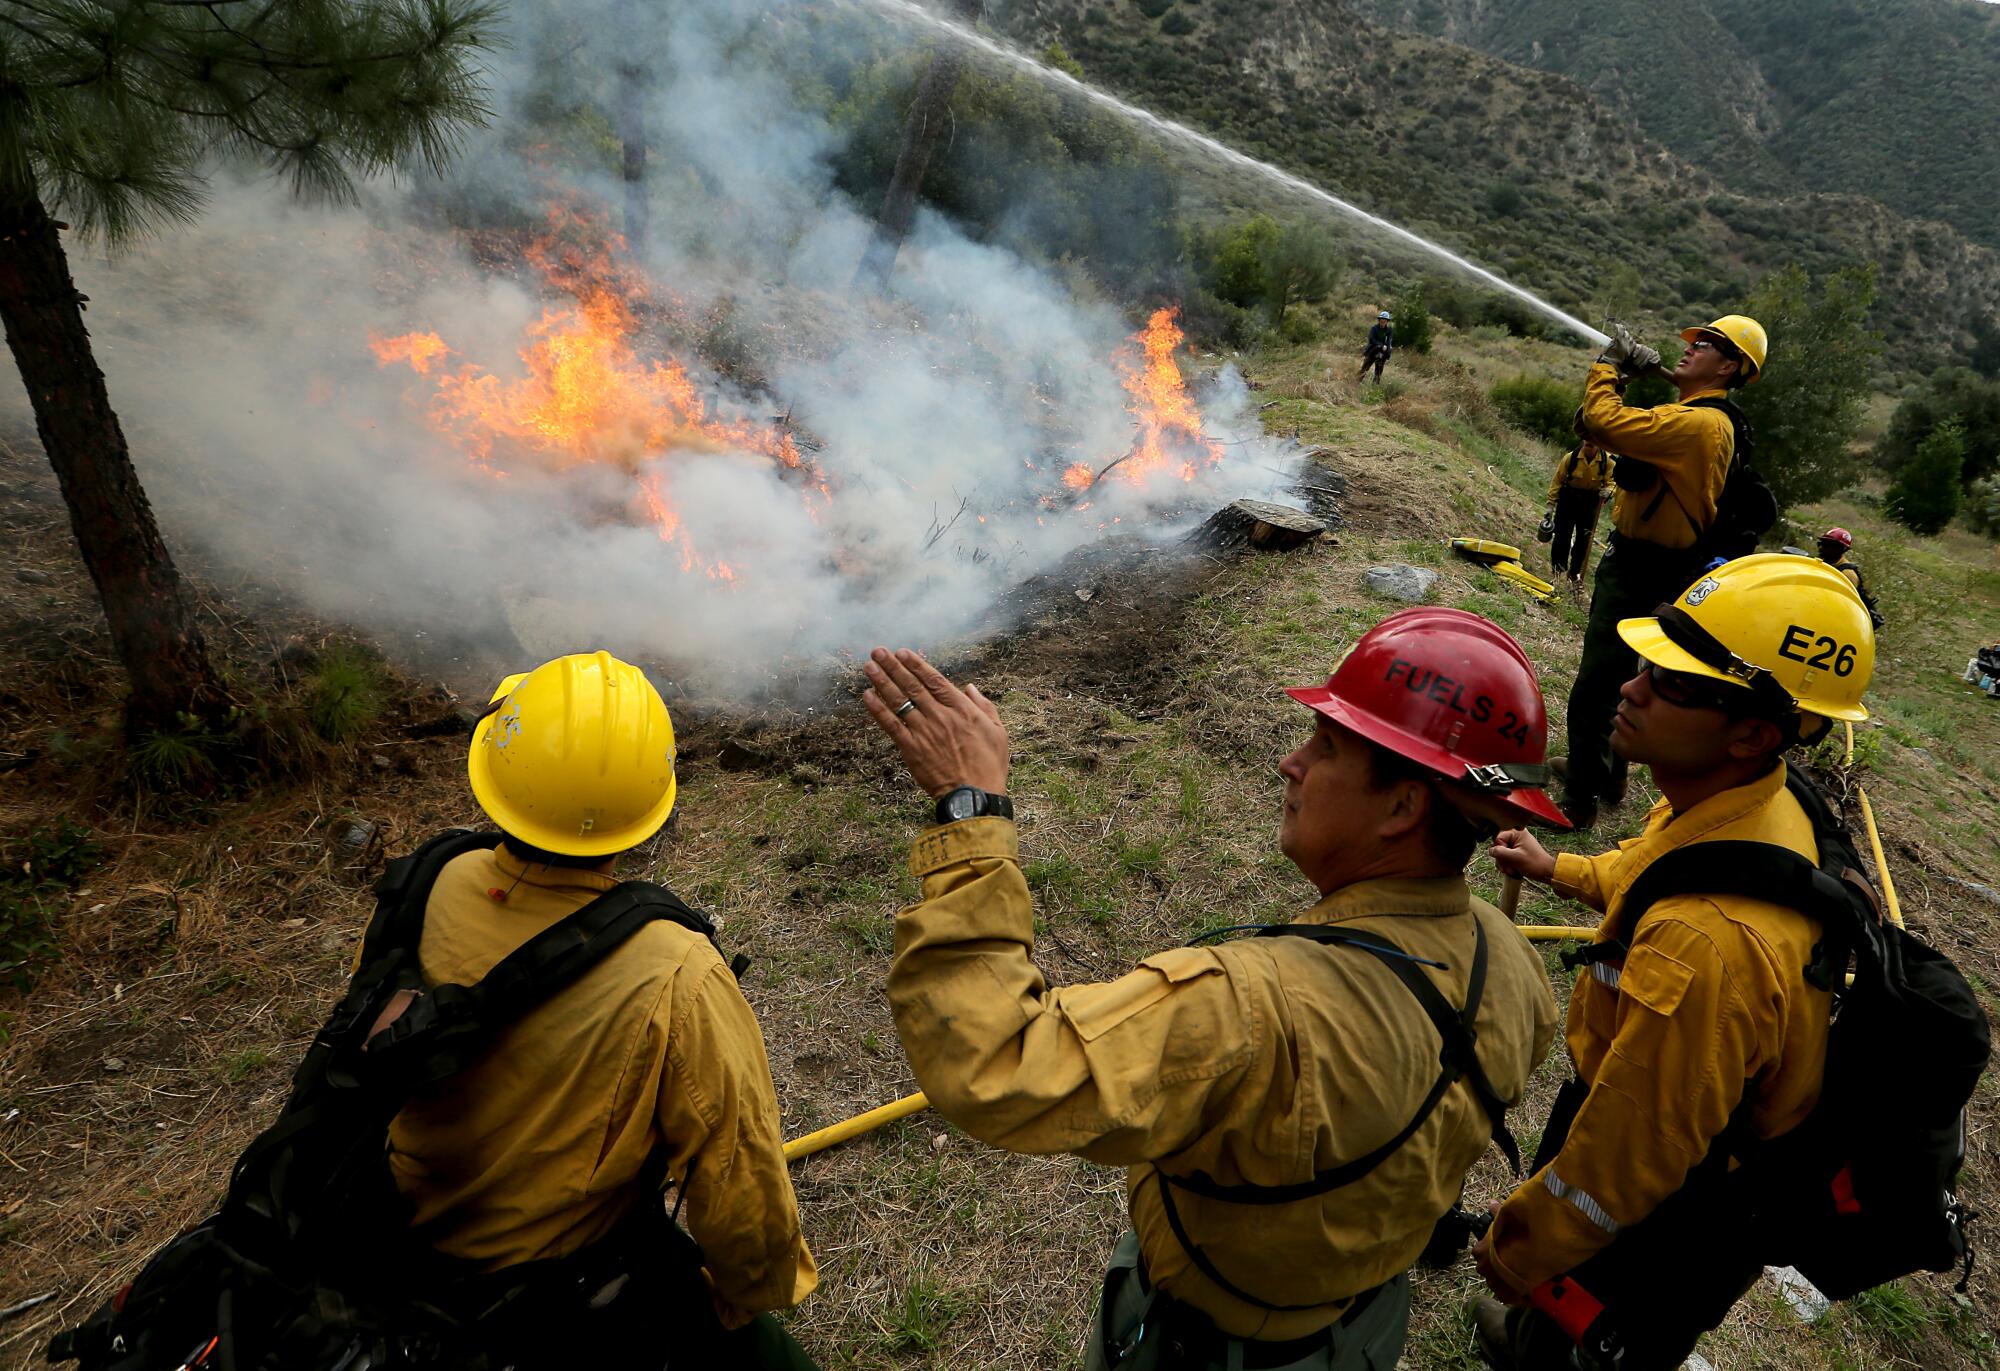 Ein Besatzungsmitglied des Forstdienstes sprüht Wasser auf eine Vegetation am Rande eines vorgeschriebenen Feuers.